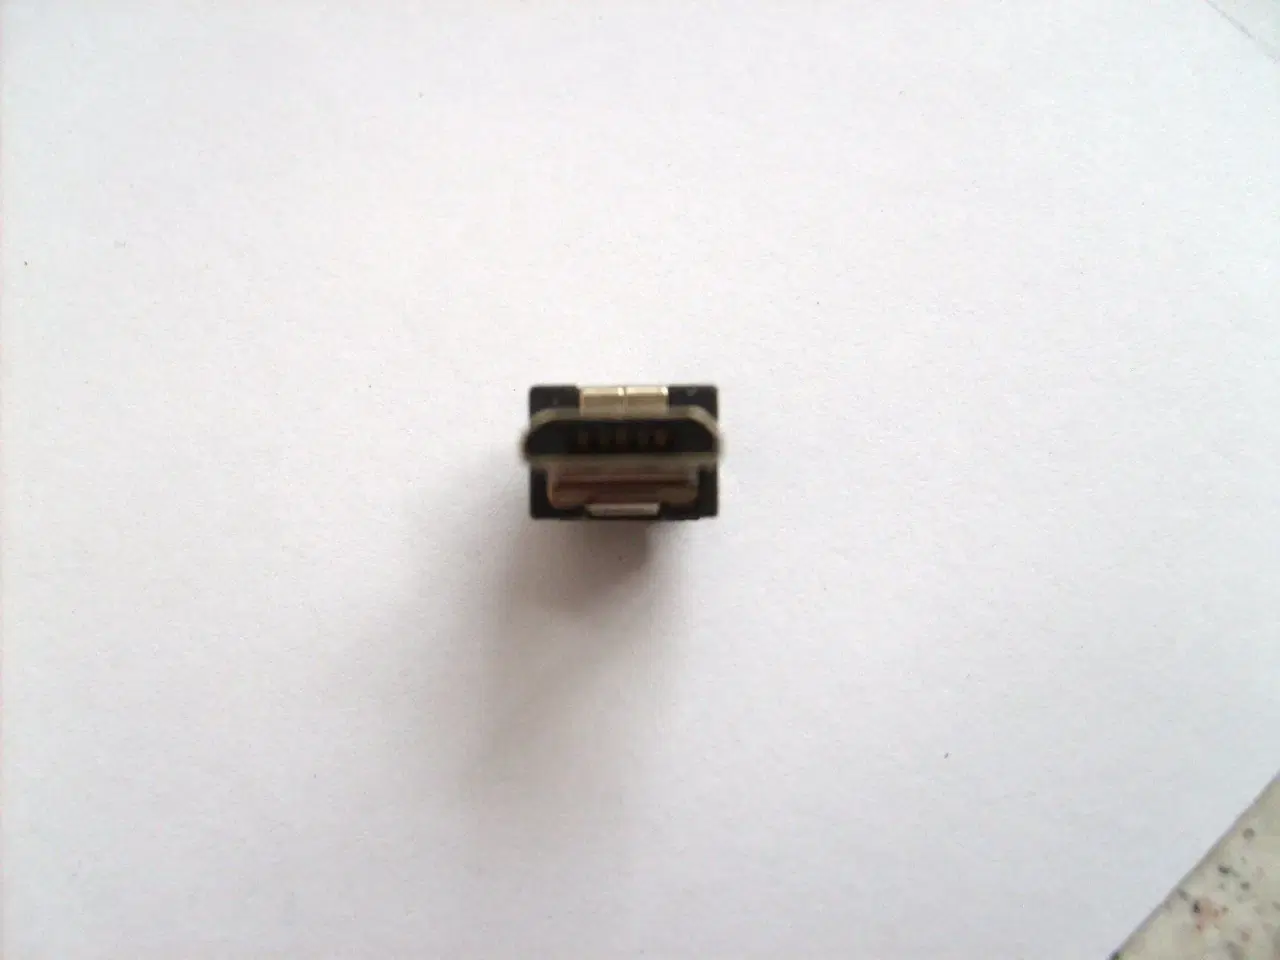 Billede 3 - Micro-USB han-stik type B med plastik hus og tylle